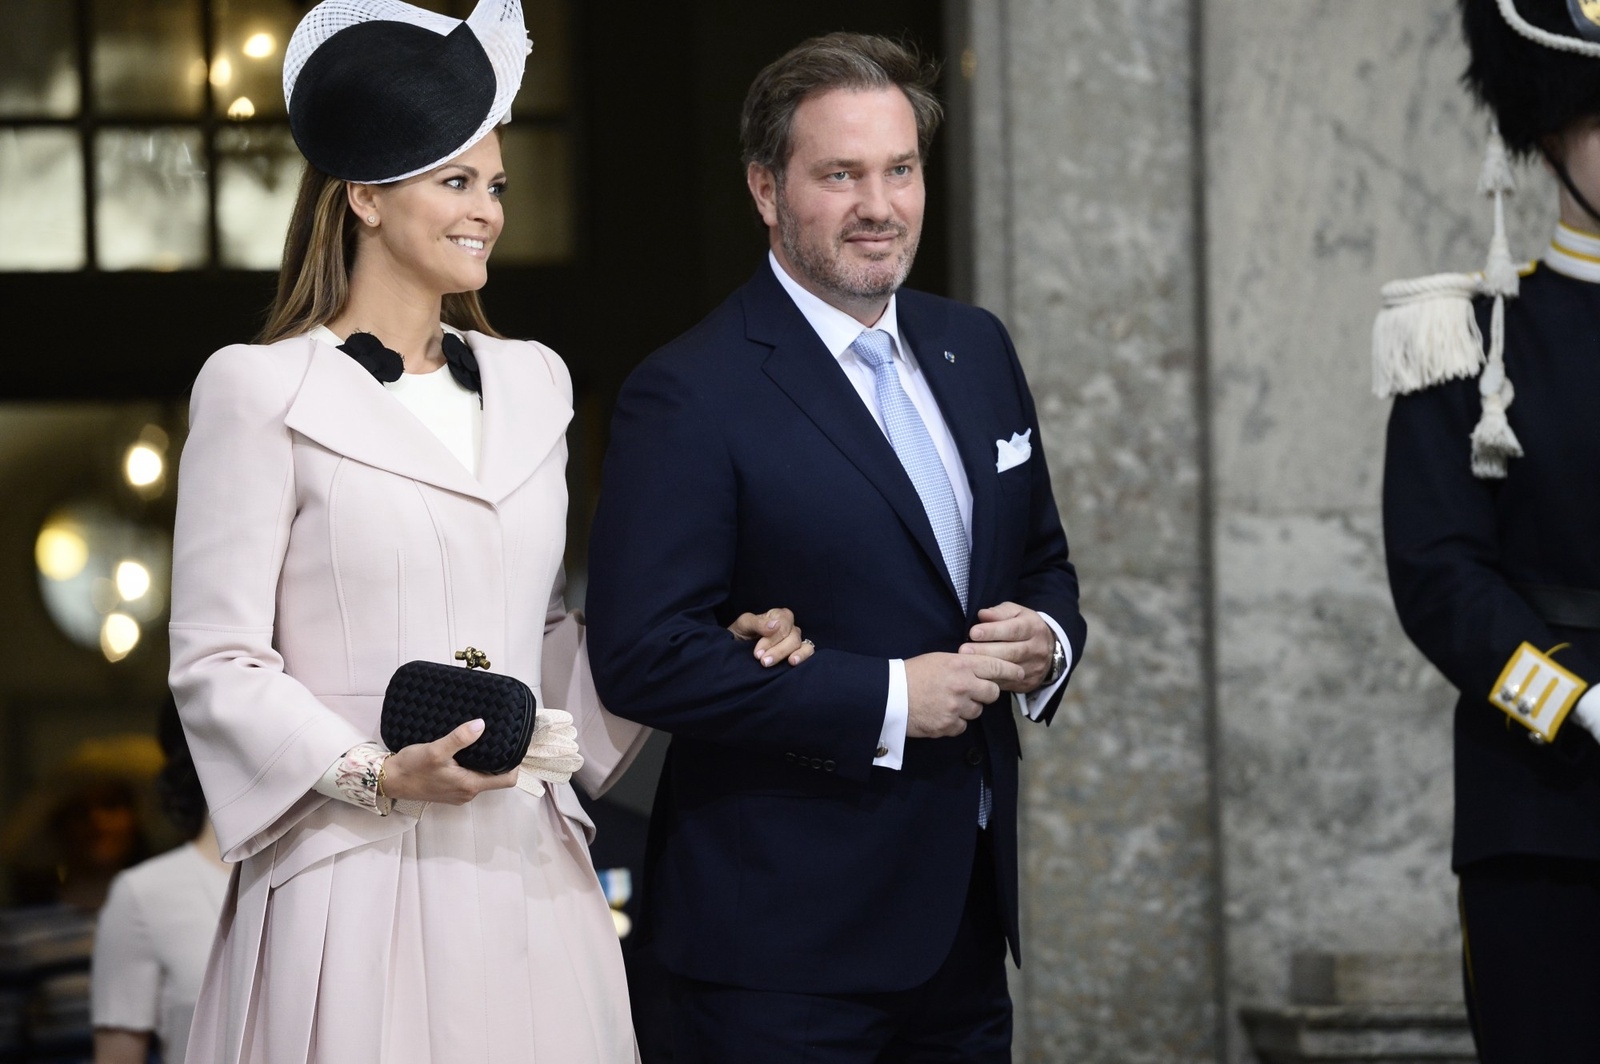 Prinsessan Madeleine och Christopher O'Neill anländer till Te Deum i Slottskyrkan i Stockholm lördagen den 30 april med anledning av högtidlighållandet av kung Carl Gustafs 70-årsdag.
Foto: Maja Suslin / TT